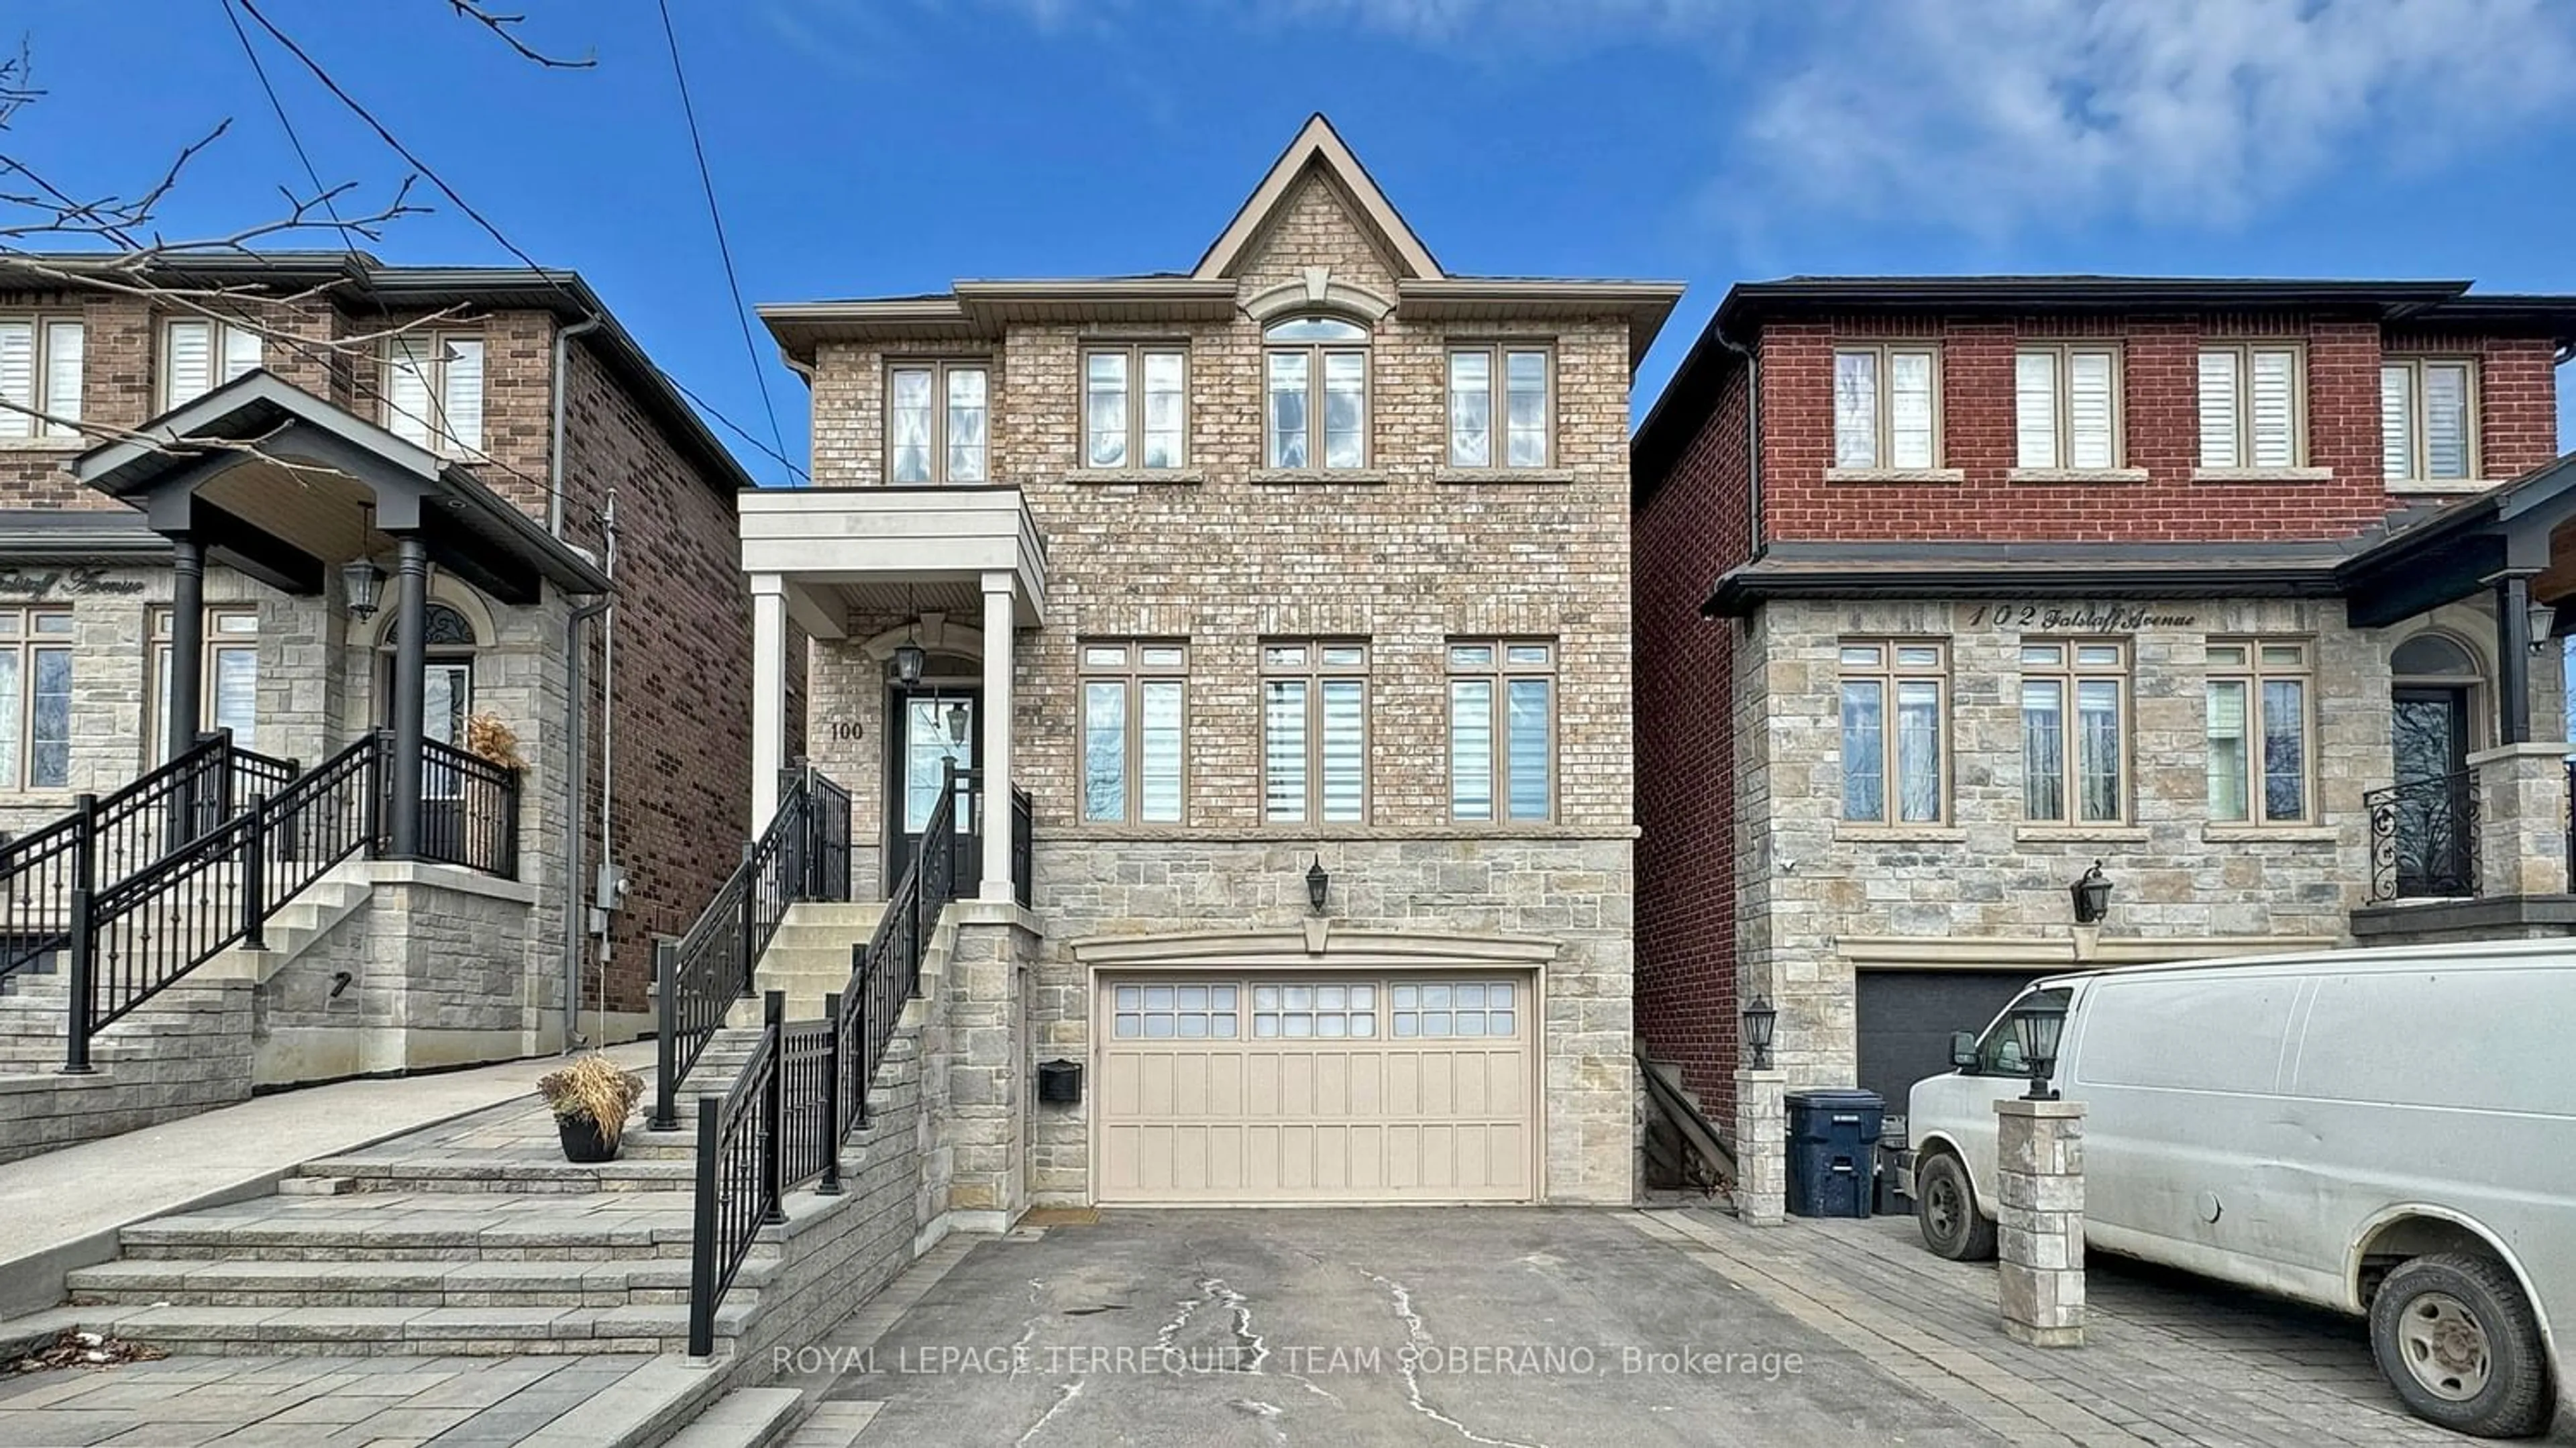 Home with brick exterior material for 100 Falstaff Ave, Toronto Ontario M6L 2E4